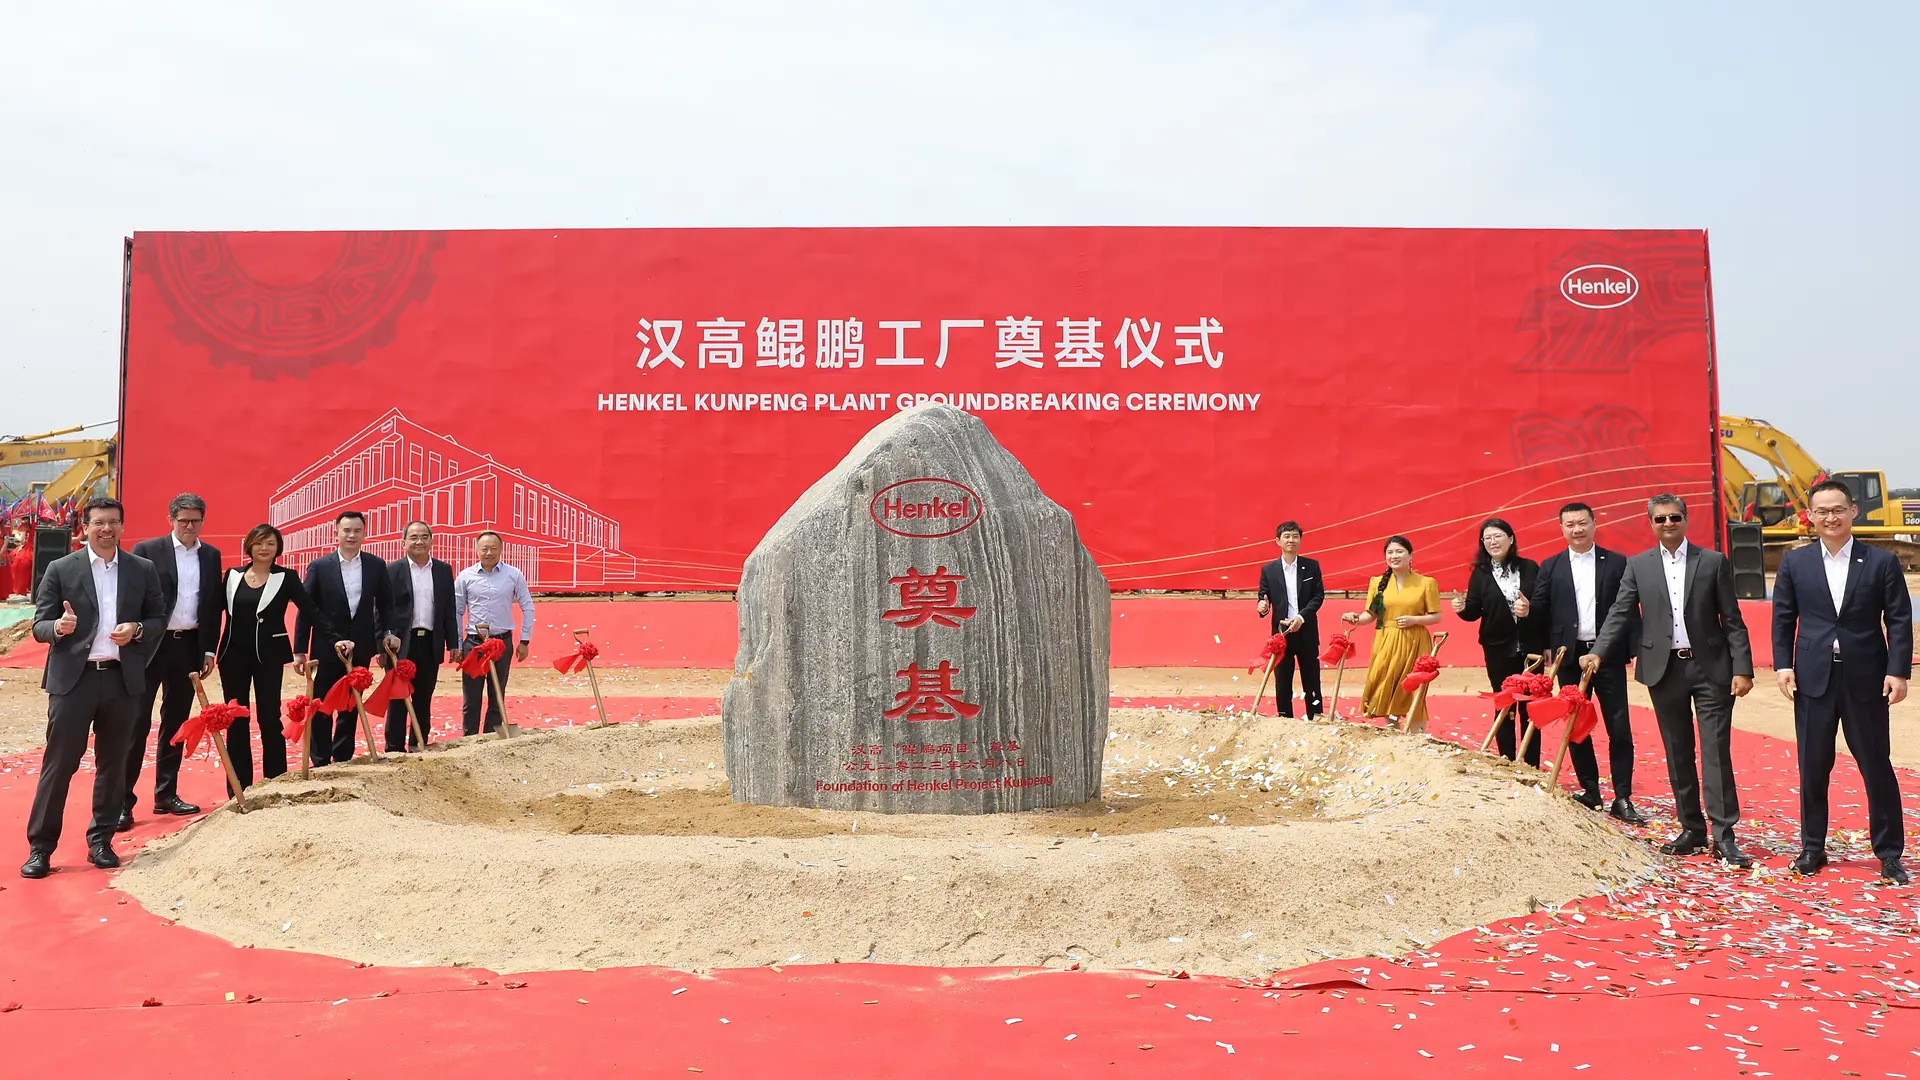 汉高全新粘合剂工厂在中国正式动工